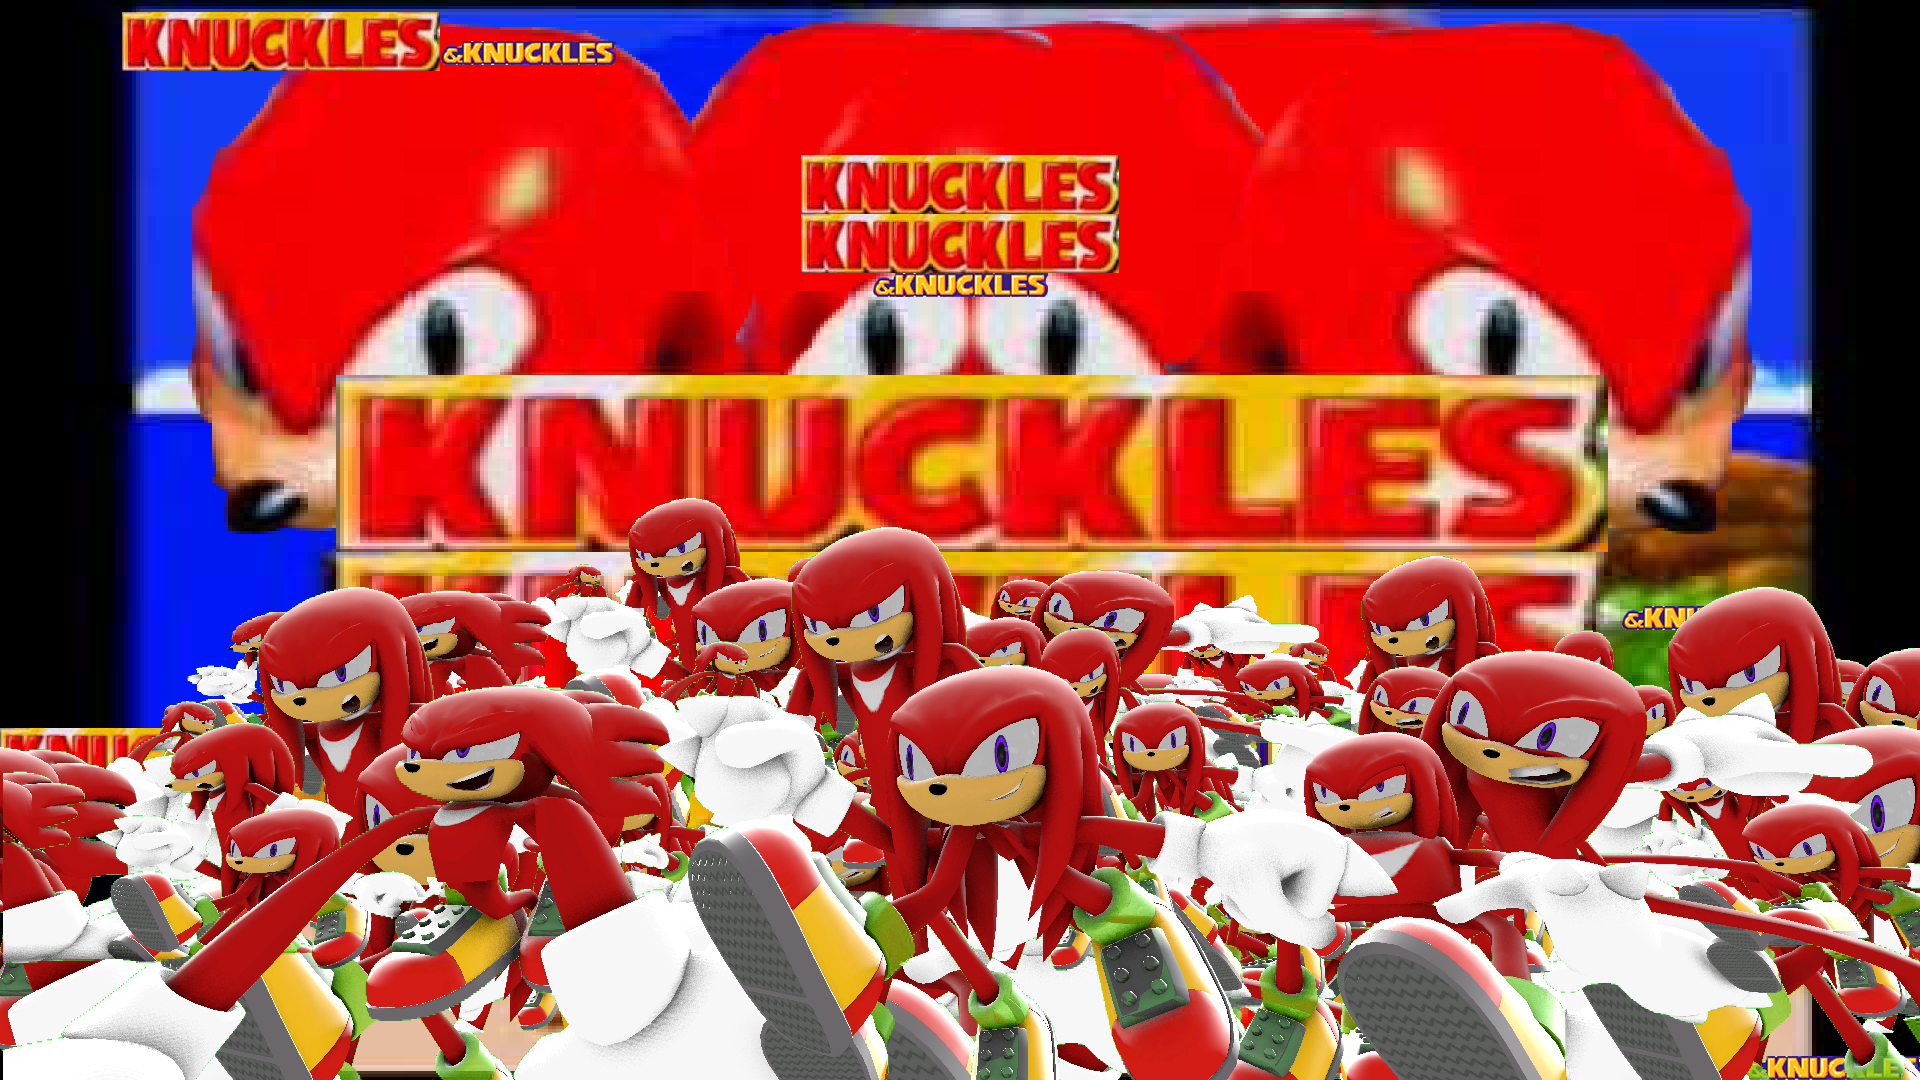 Knuckles the Knuckles and Knuckles + Knuckles